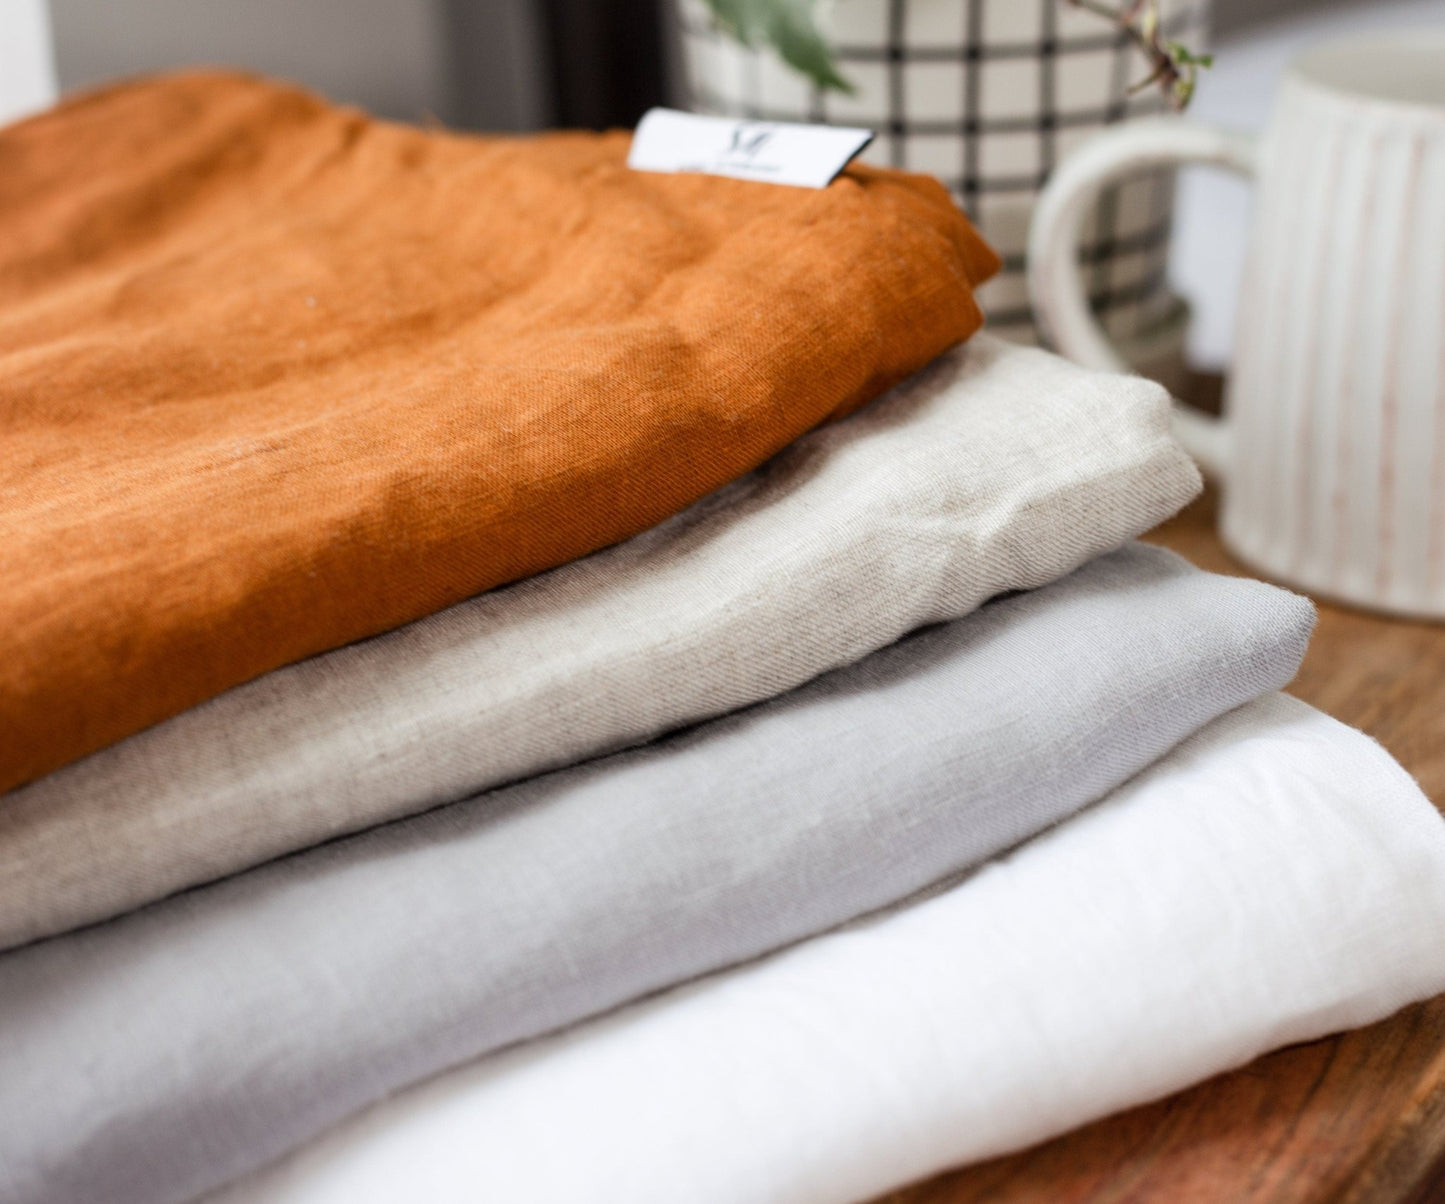 Linen Bedding Duvet in White Color | White Color King Queen Soft Linen Duvet Cover | Farmhouse Bedding Home Bedroom Decor Linen Duvet Cover